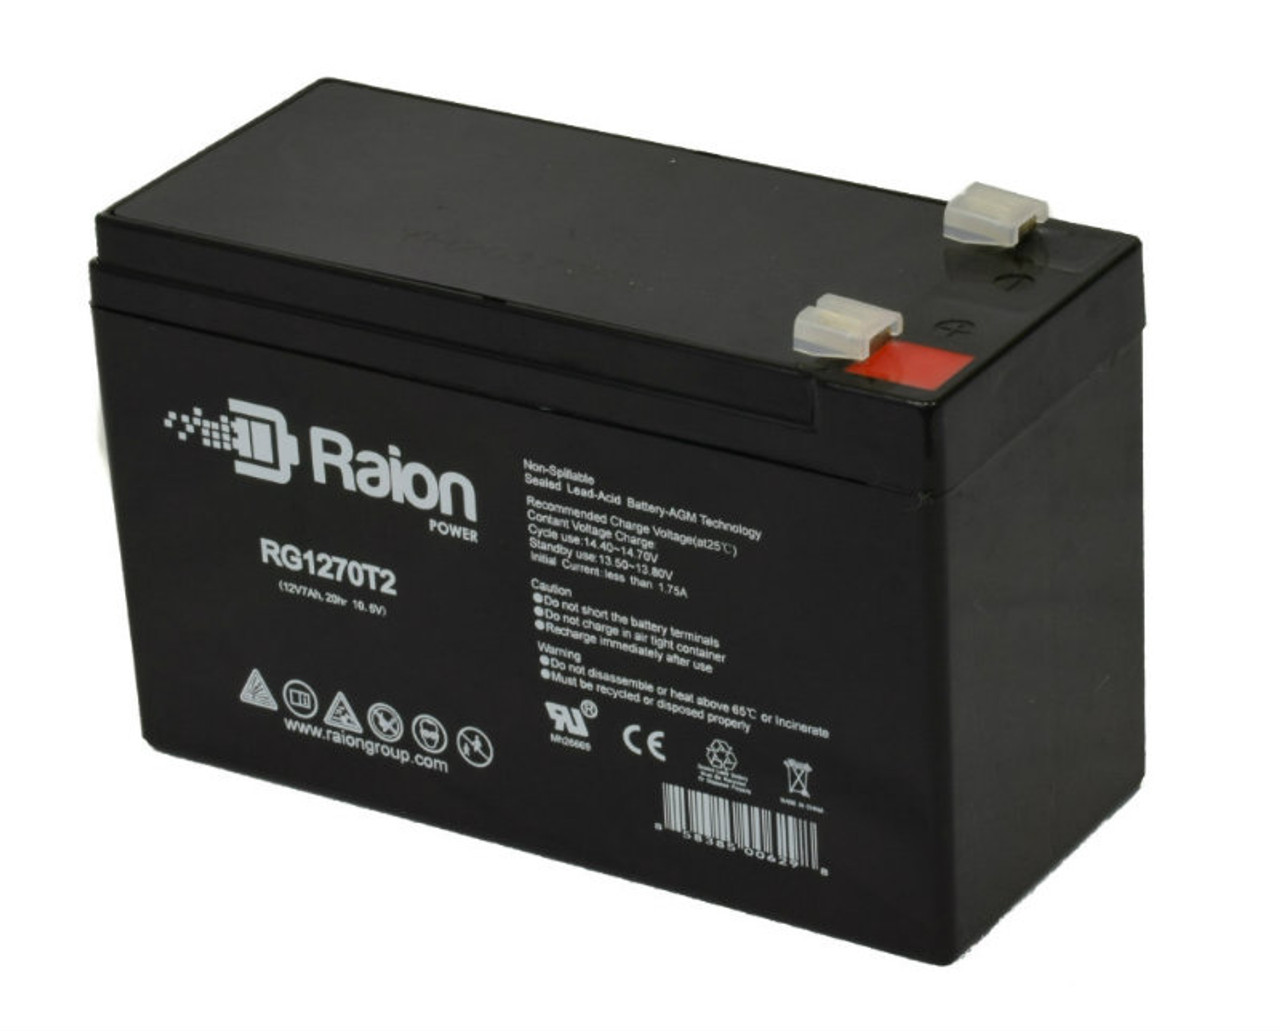 Raion Power RG1270T2 12V 7Ah Lead Acid Battery for Tao Motor E250 Invader